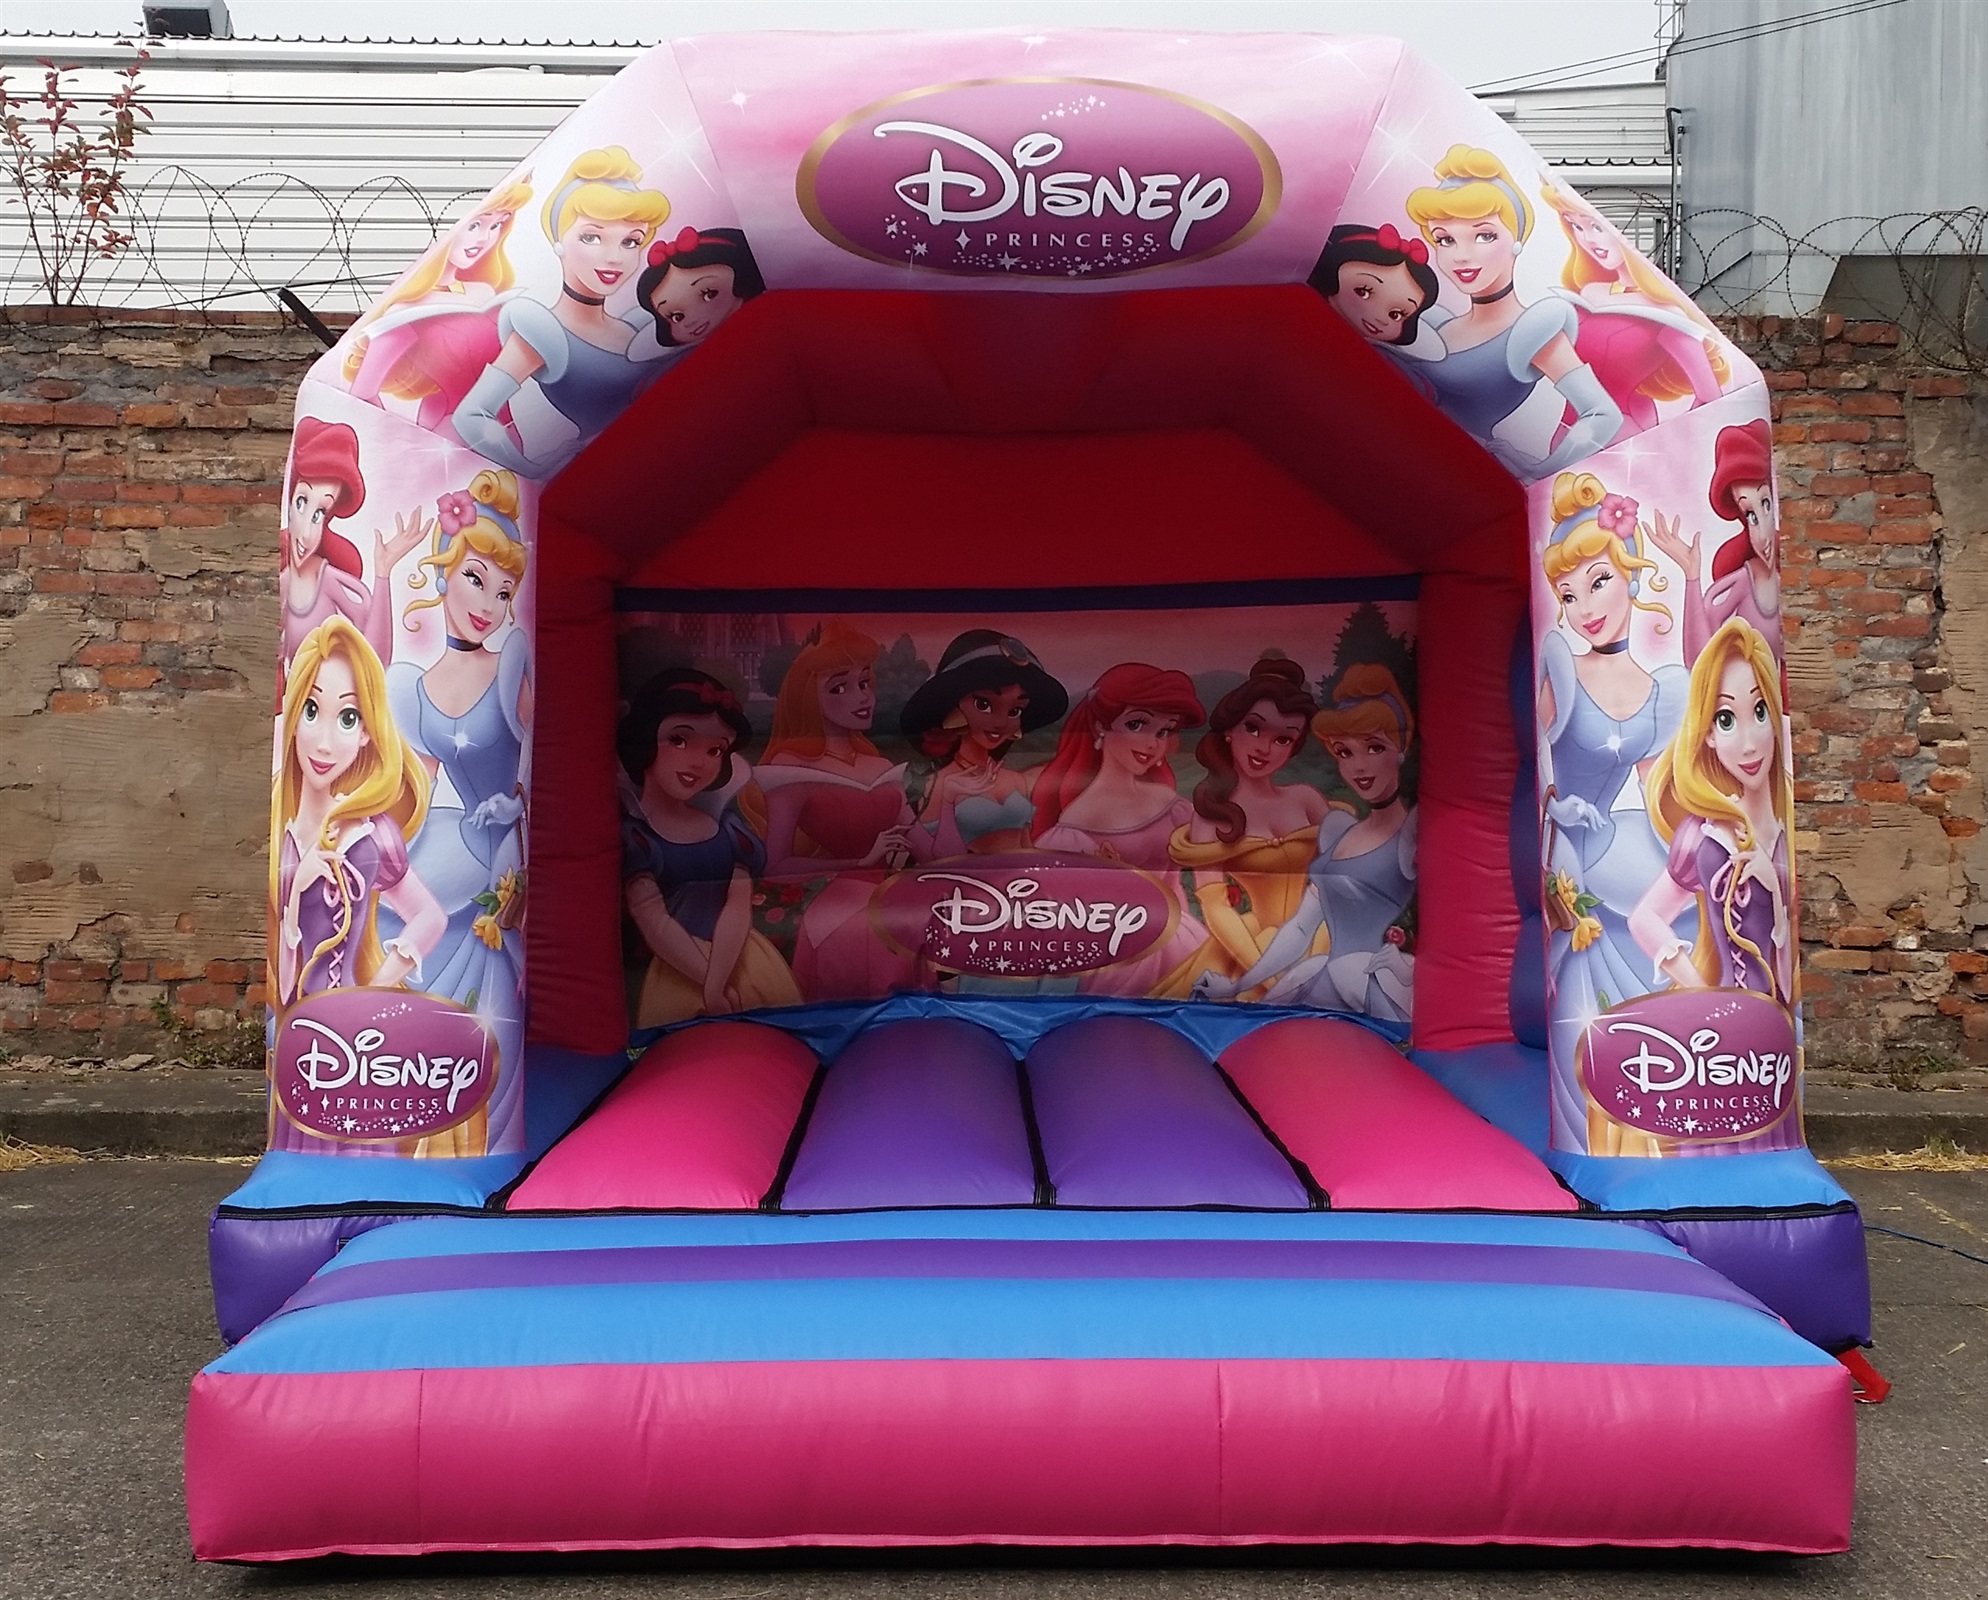 Disney Princess Bouncy Castle Hire 